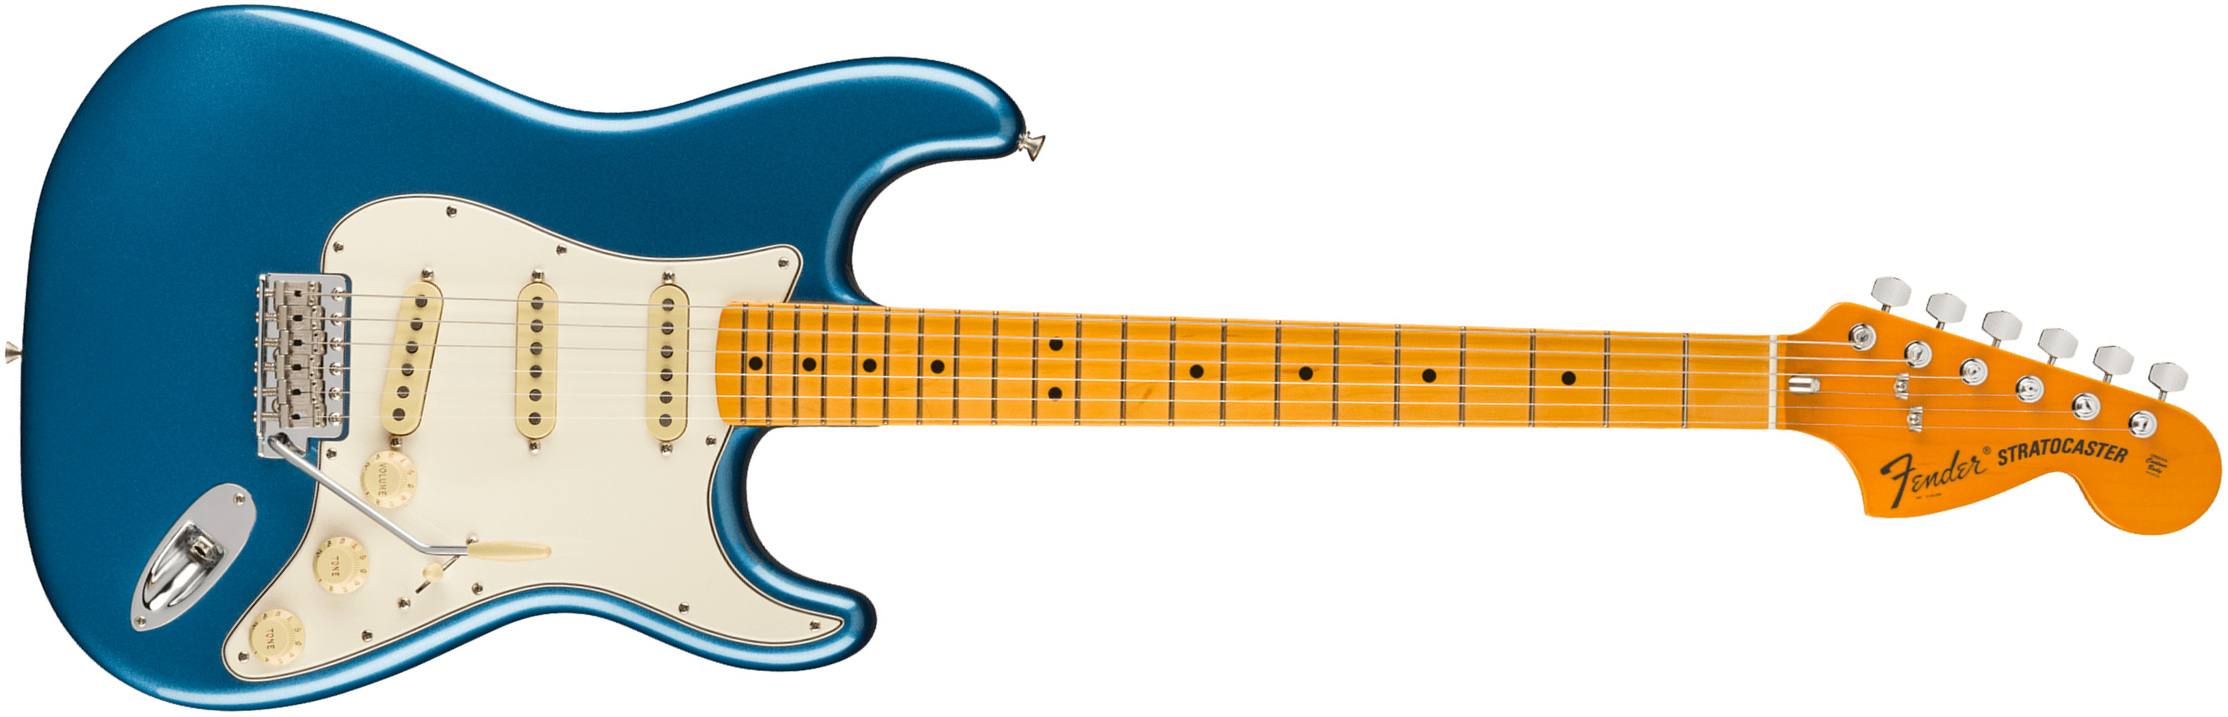 Fender Strat 1973 American Vintage Ii Usa 3s Trem Mn - Lake Placid Blue - E-Gitarre in Str-Form - Main picture